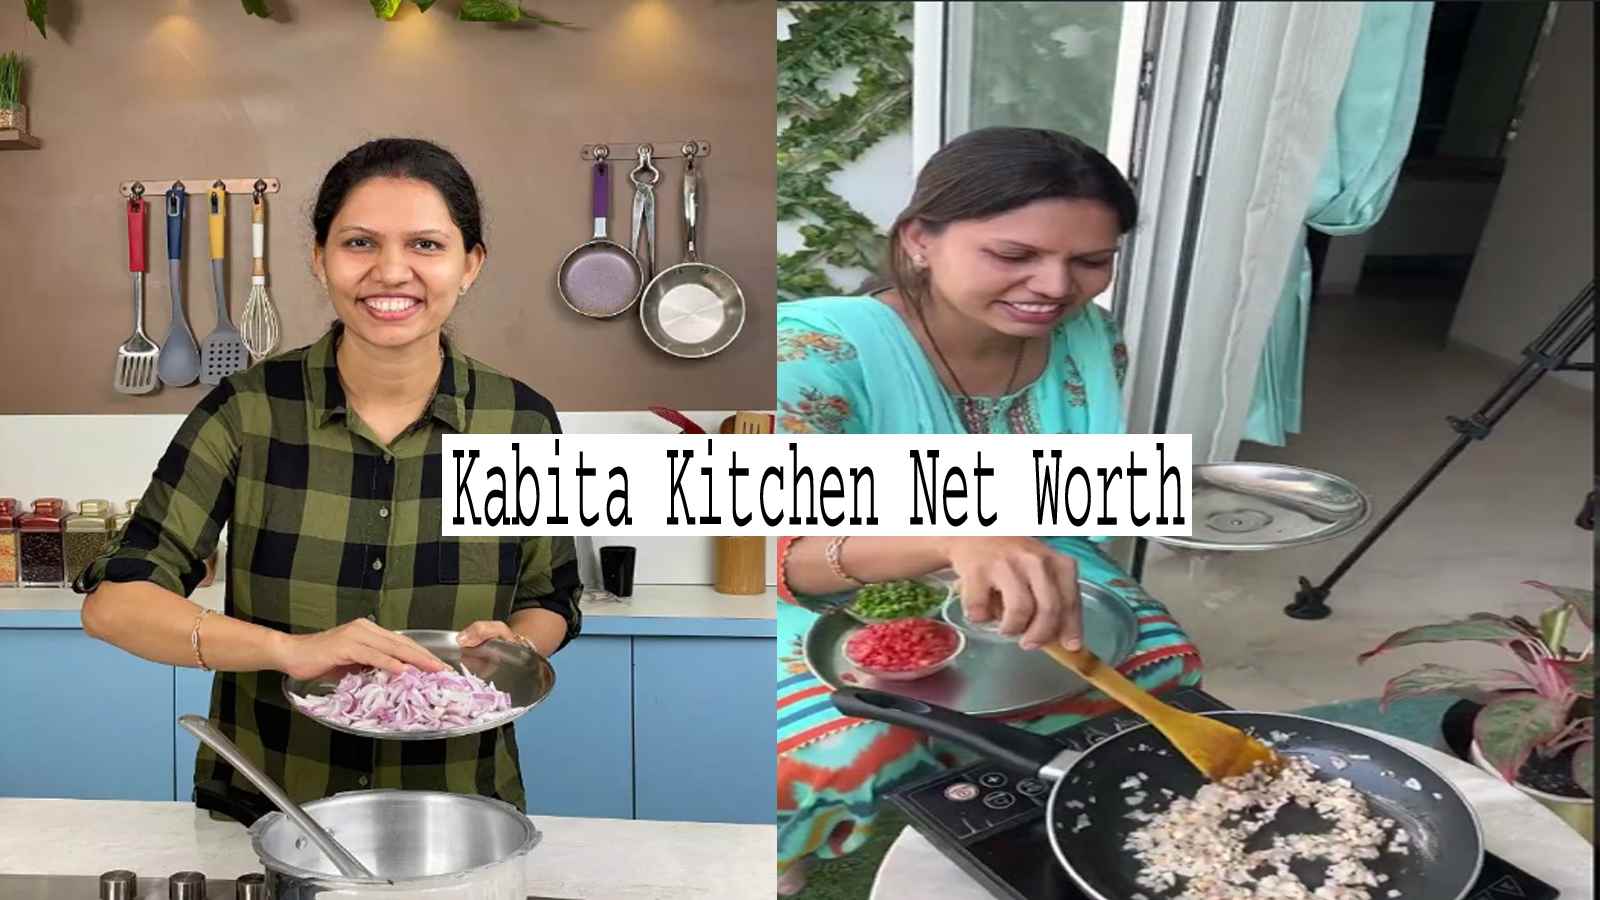 Kabita Kitchen Net Worth In Indian Rupees